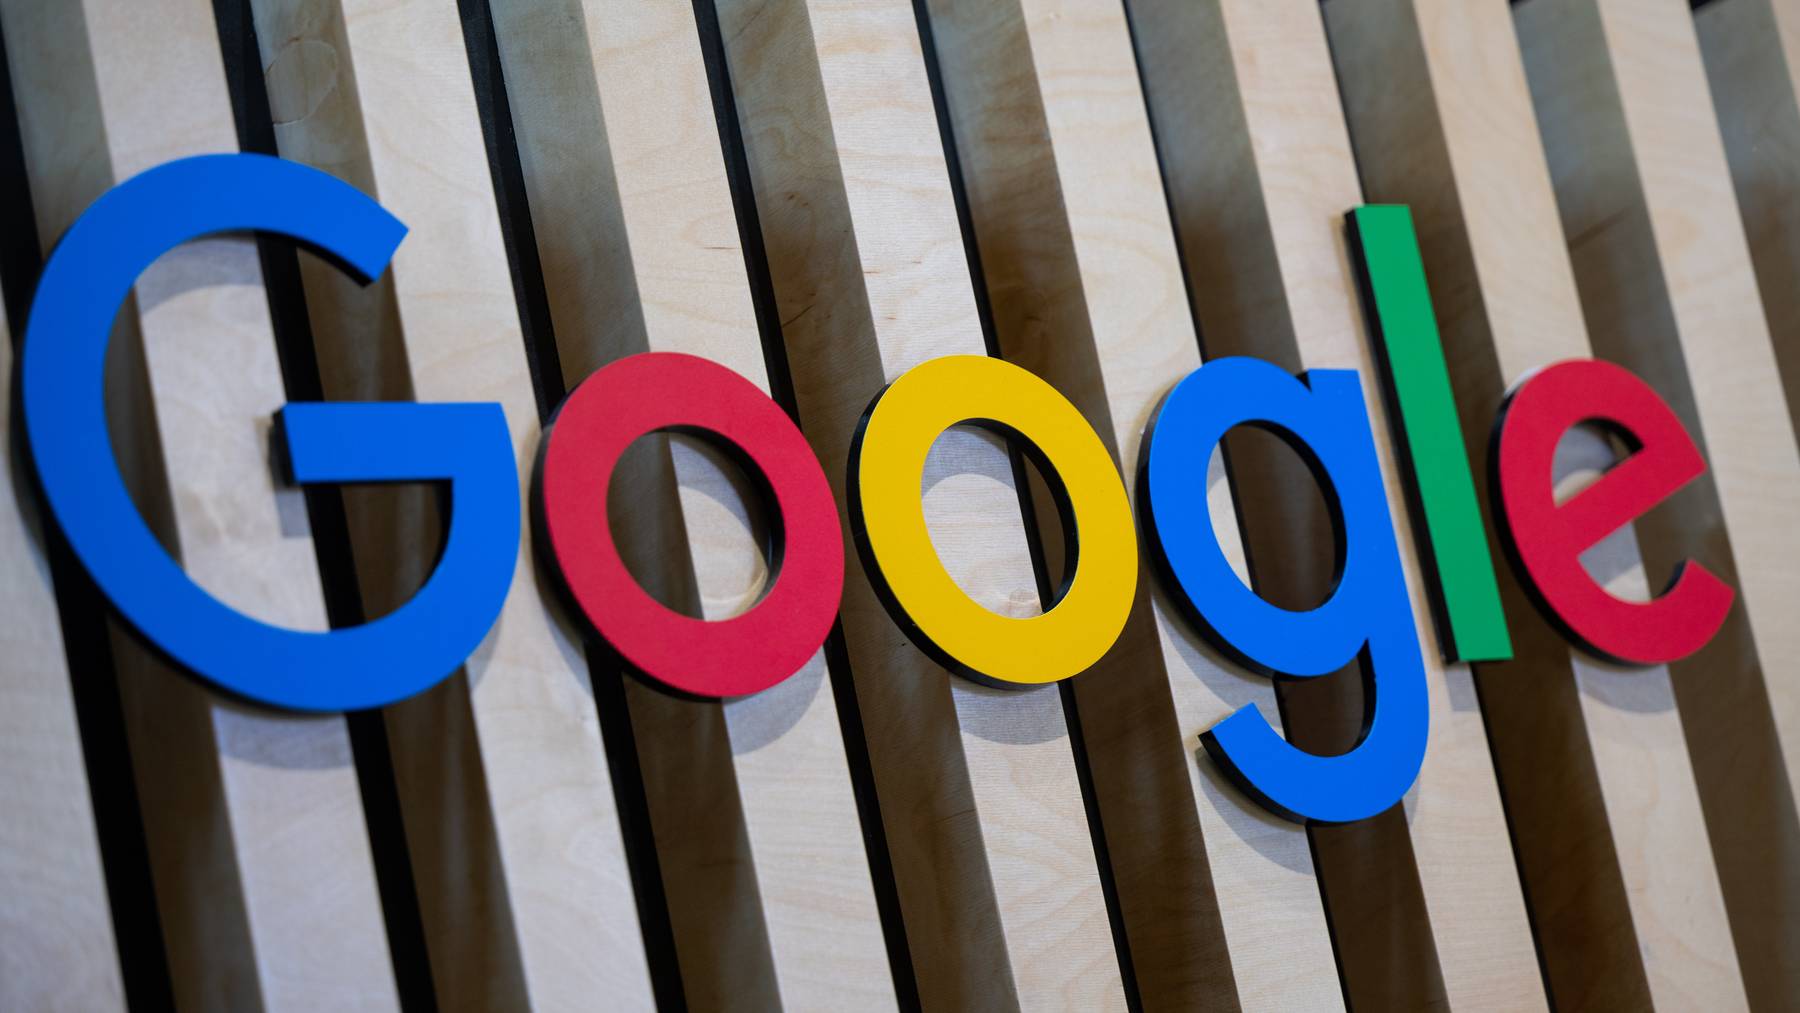 Google wird am Montag 25 Jahre alt.